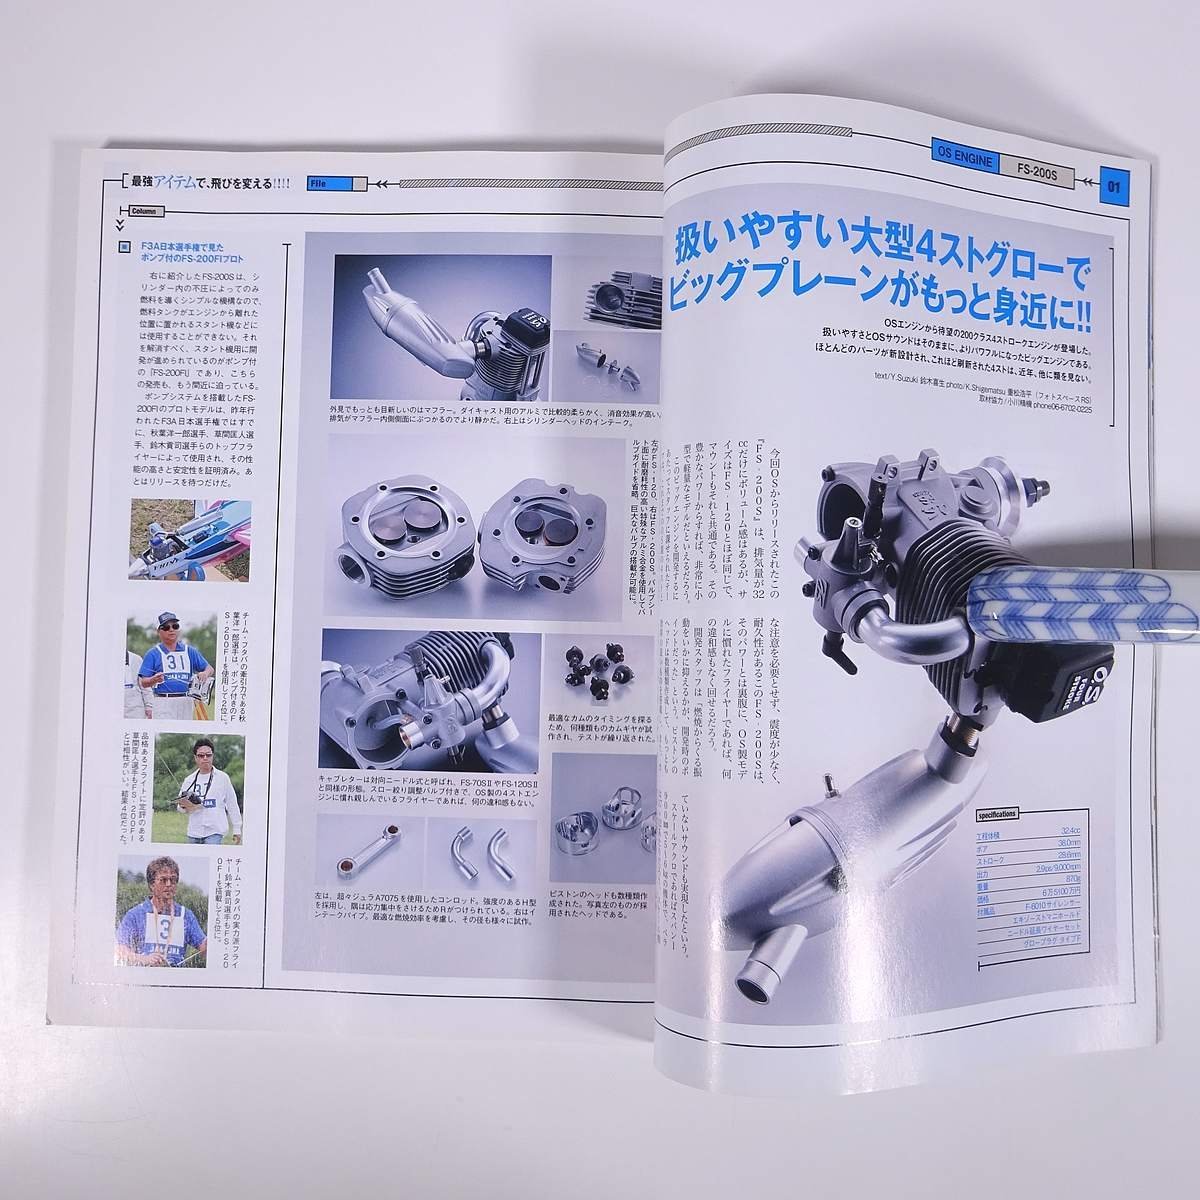 RC AIR WORLD ラジコン・エアワールド Vol.91 2007/3 枻出版社 雑誌 ラジコン RC 模型 飛行機 特集・最強アイテムが、飛びを変える ほか_画像7